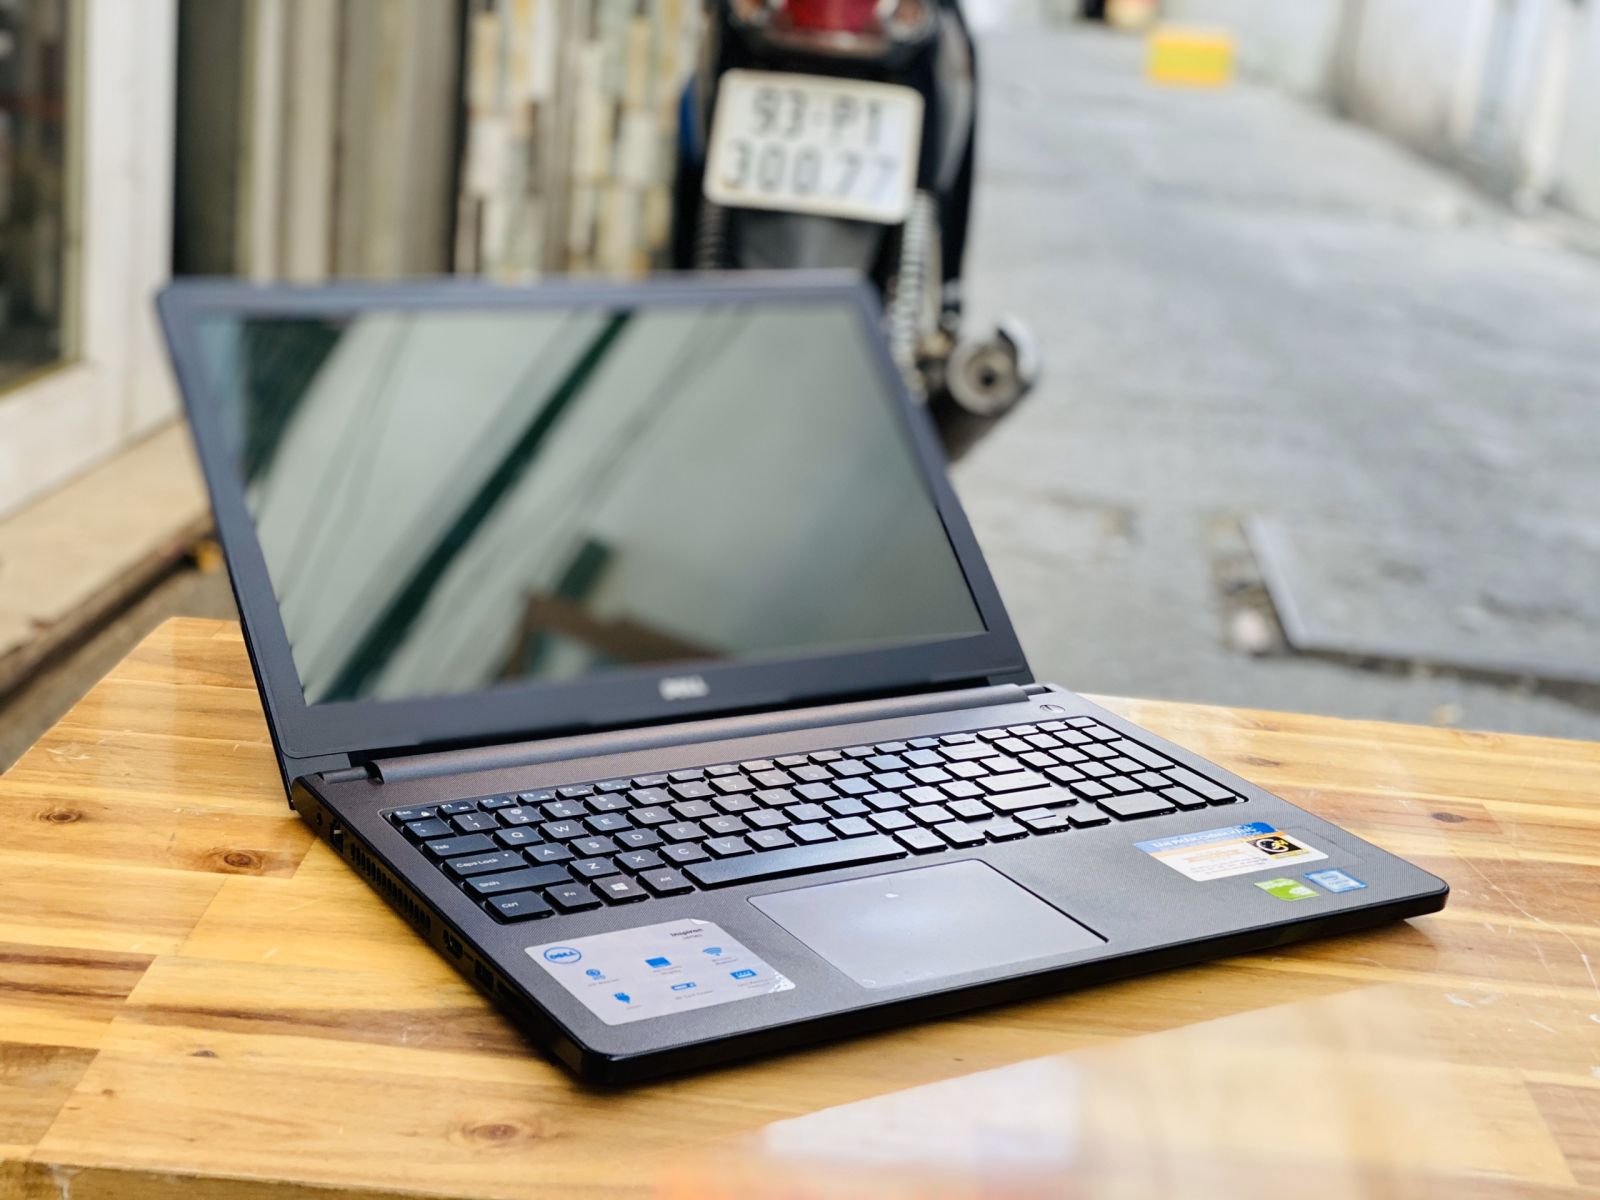 Laptop Dell Inspiron 5558, i7 5500U 8G 128+500G Vga rời 4G Đèn phím Đẹp zin 100% Giá rẻ4